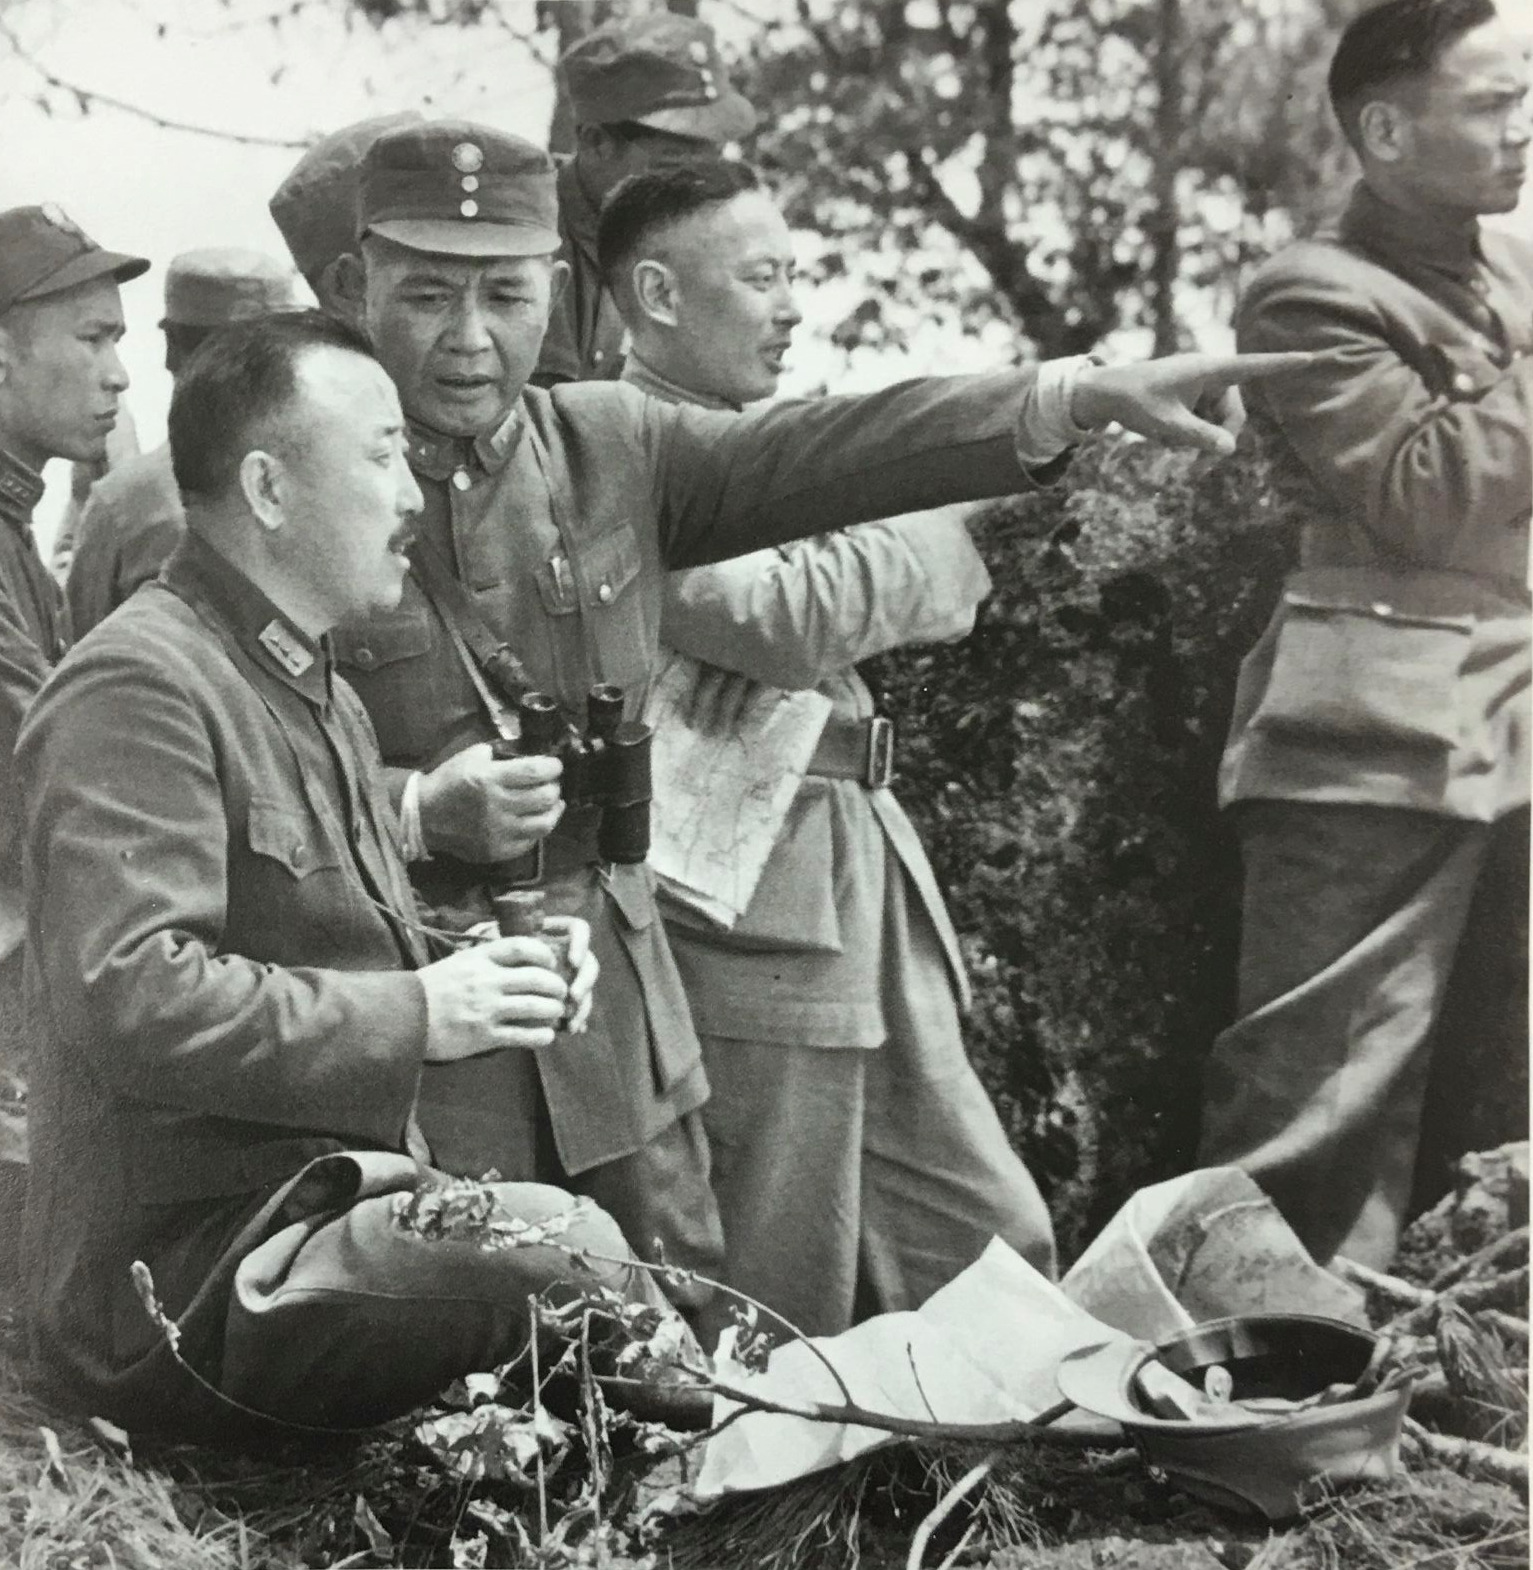 美国档案馆收藏的中国远征军司令卫立煌珍贵照片